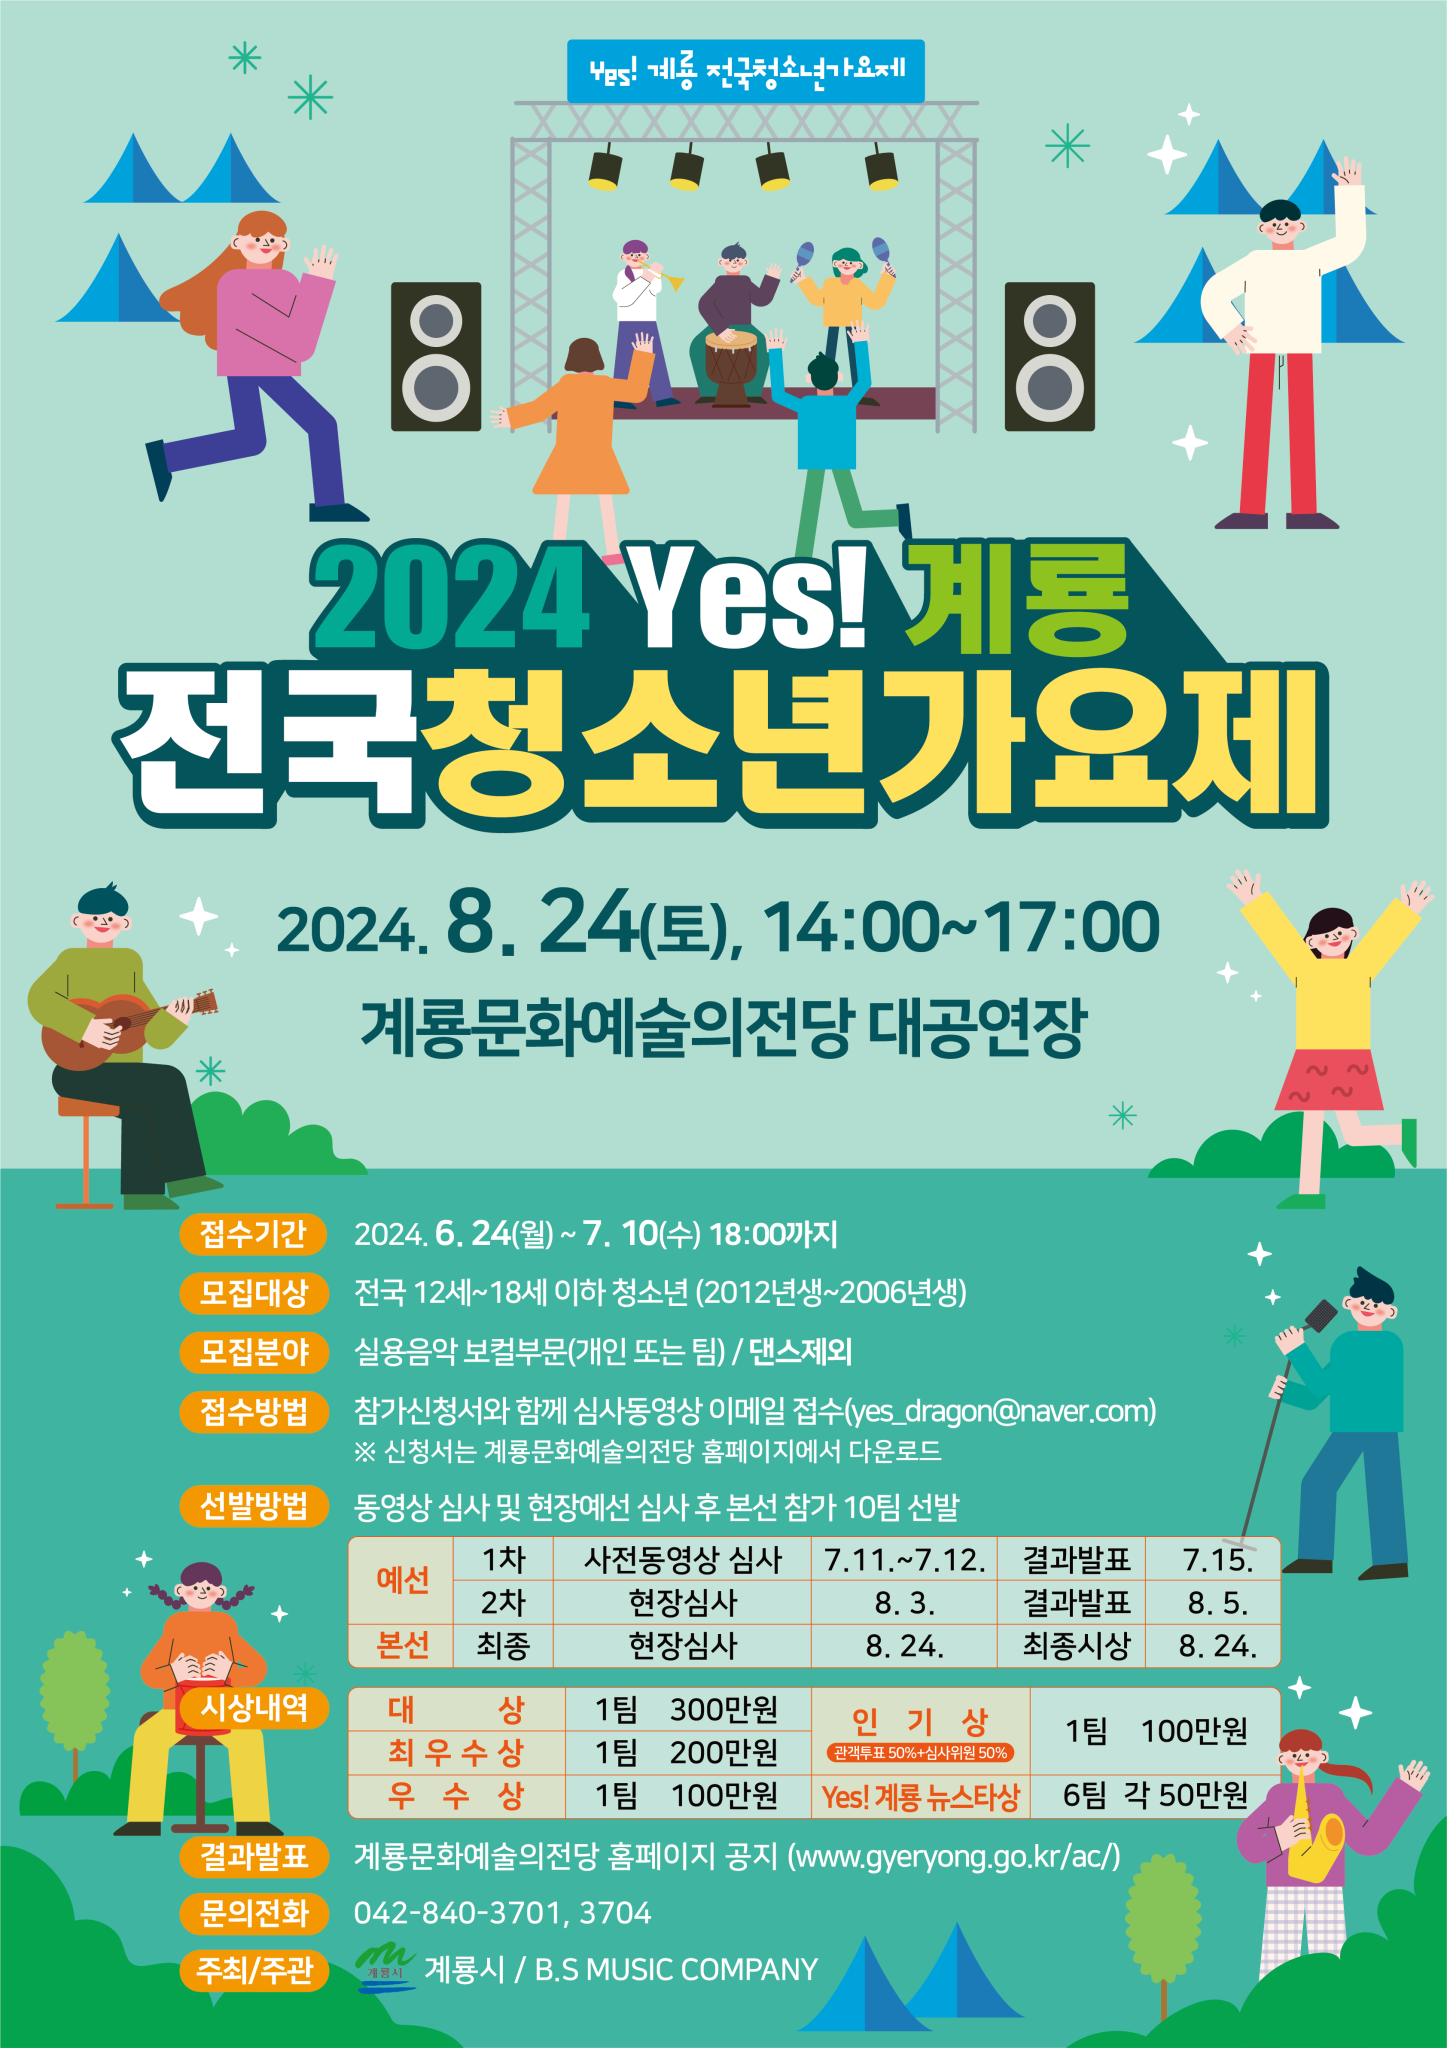 계룡시 공공시설사업소_2024 yes! 계룡 전국 청소년 가요제 포스터